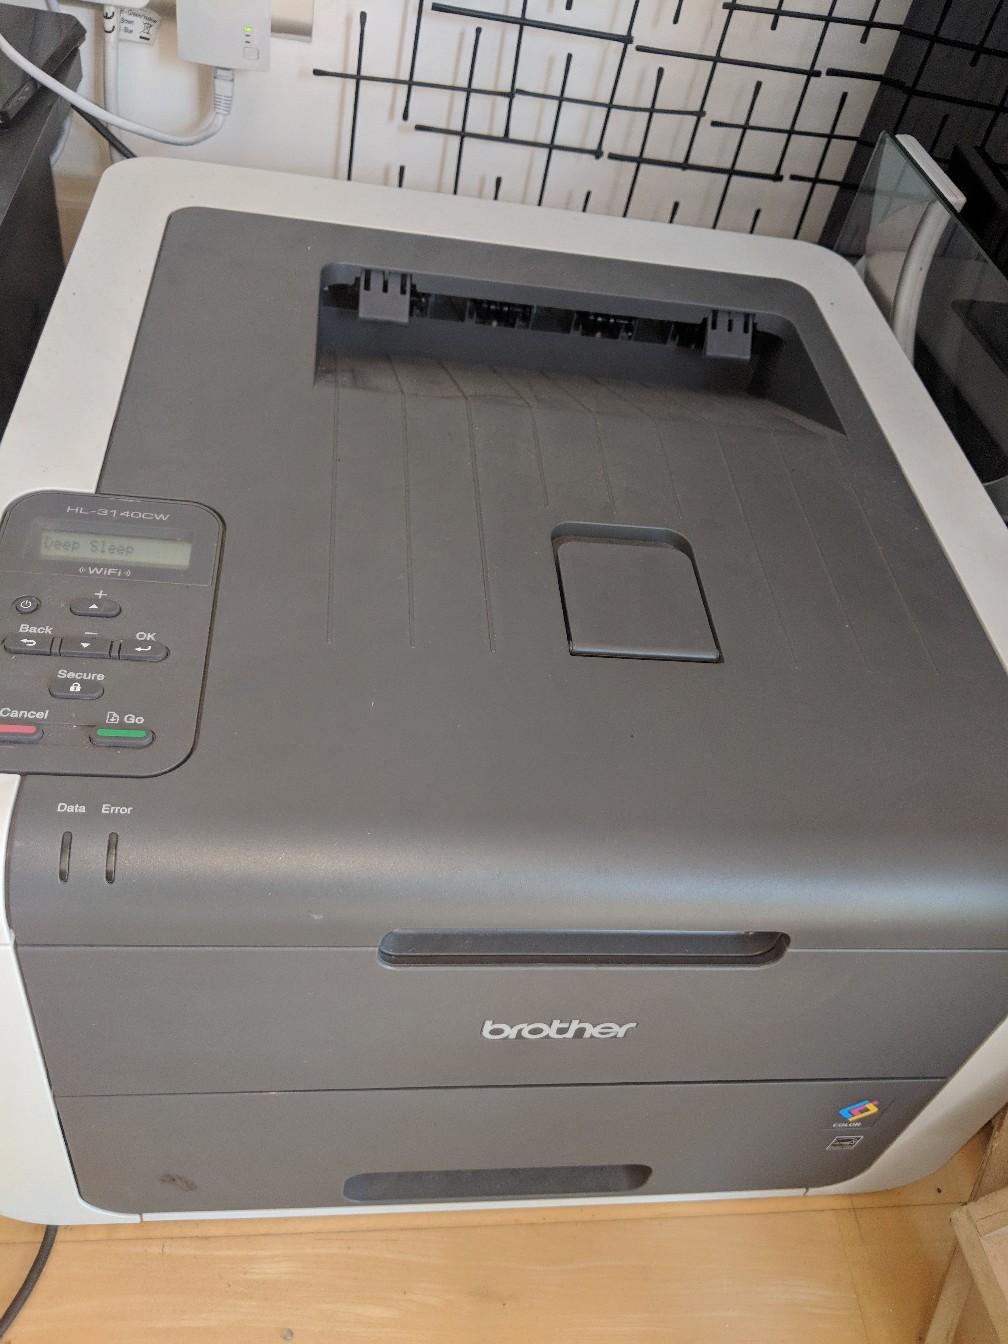 Brother Hl 3140cw Colour Laser Printer In Sw1v Westminster For £5000 For Sale Shpock 5460